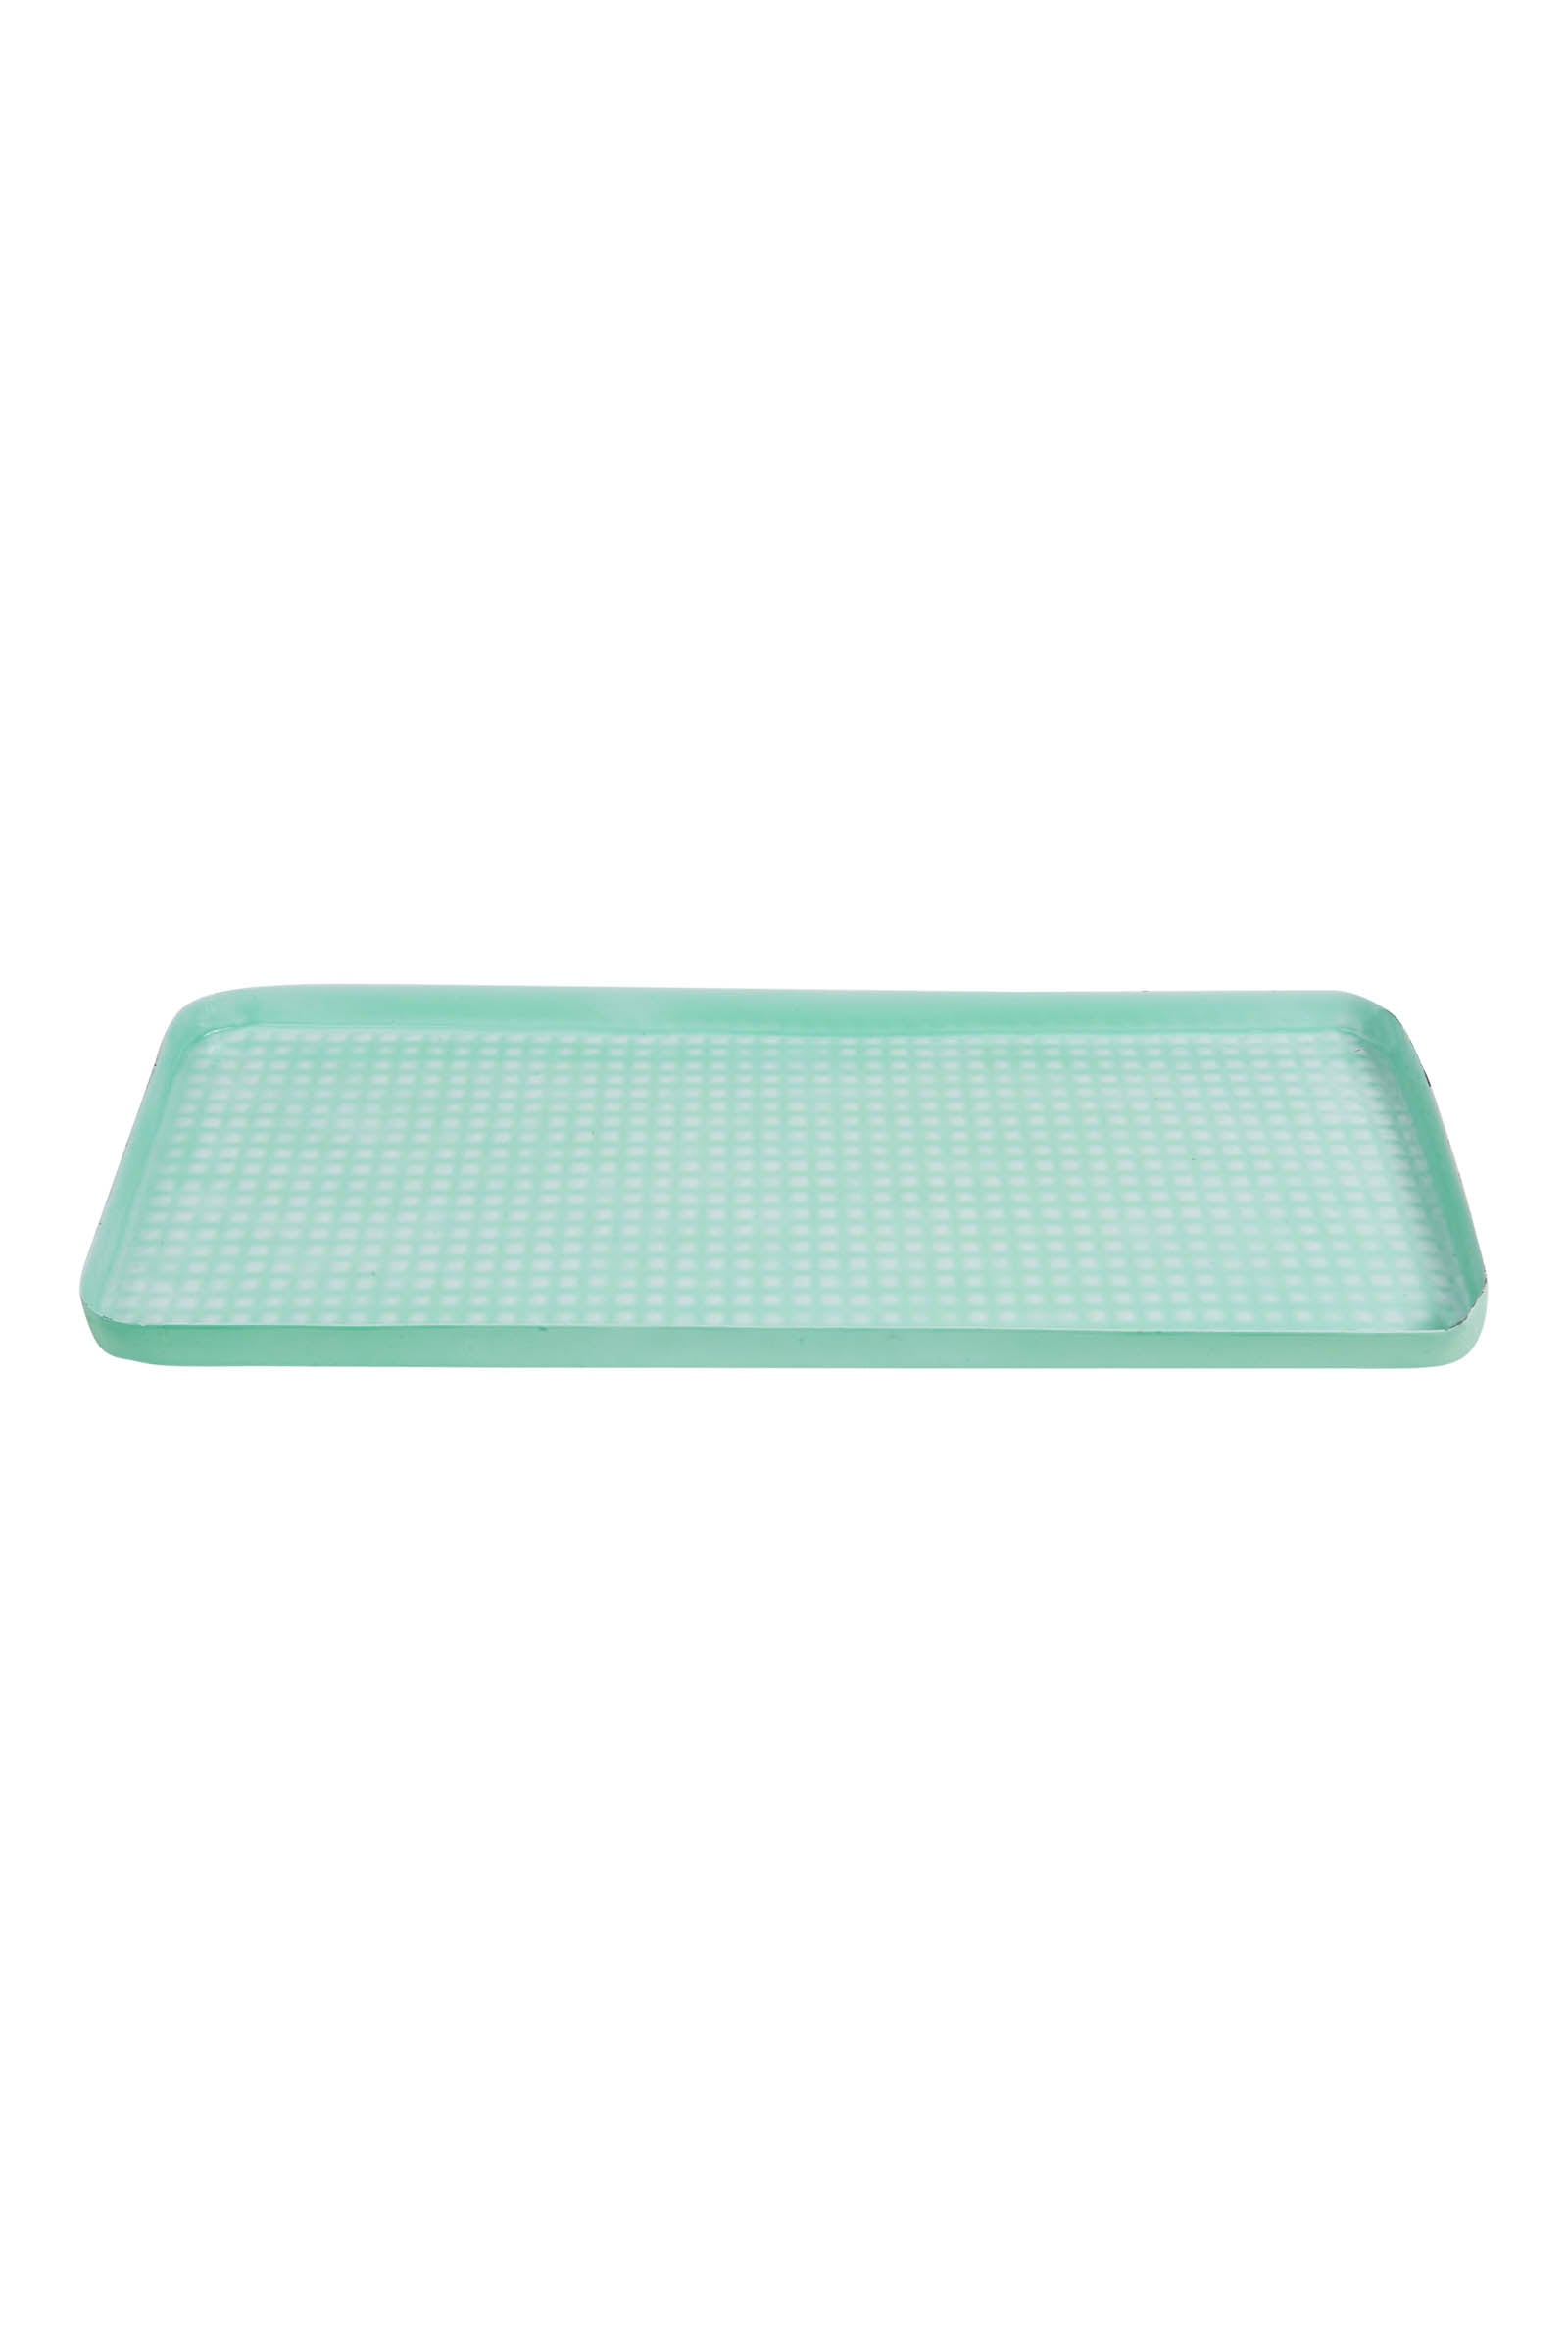 Esprit Platter - Mint - eb&ive Table Top